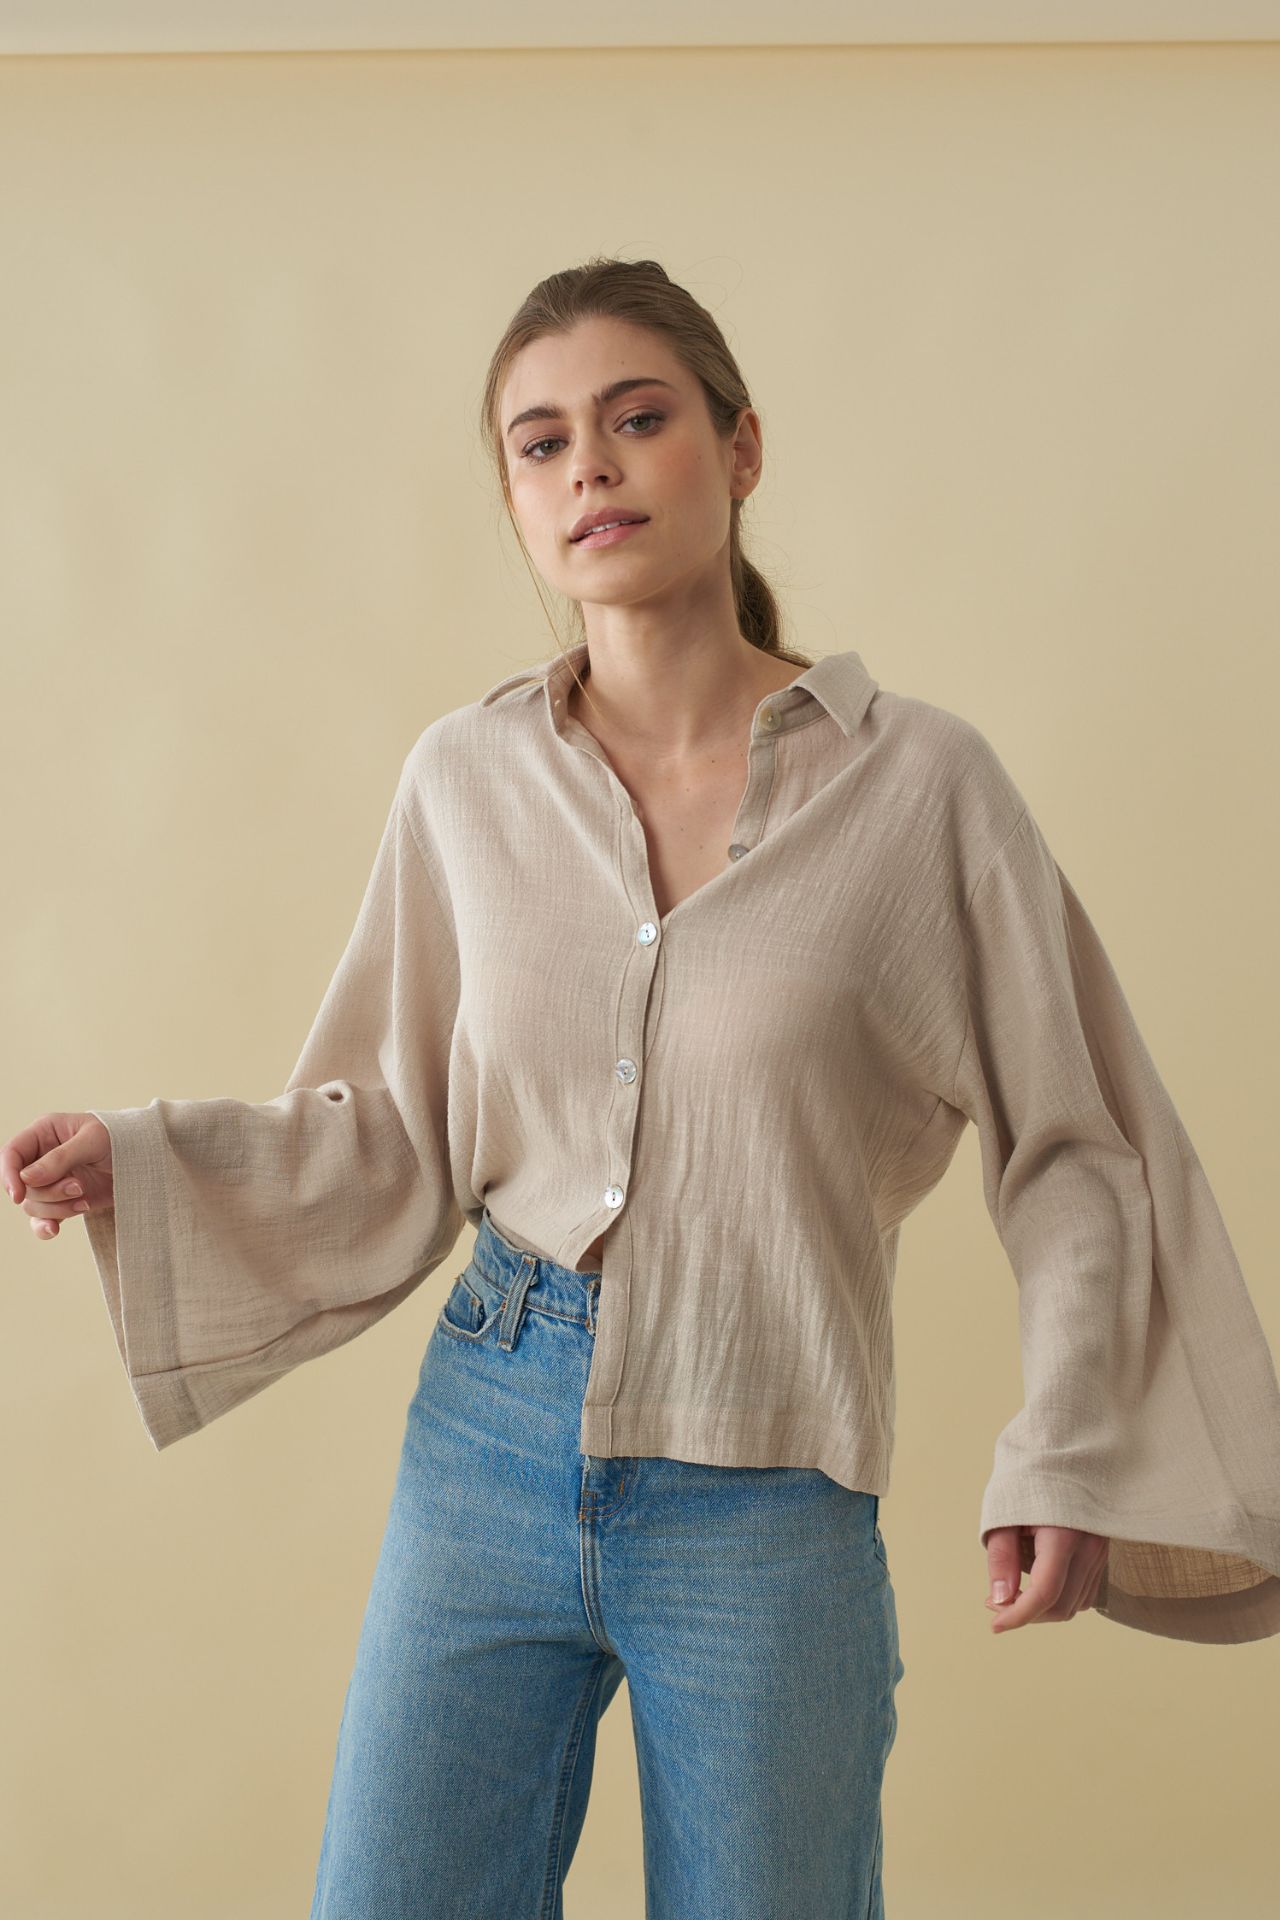 Material: algodon tramdo

Blusa con cuello de camisa de material algodón waffer y manga larga

Busto: 105 cm

Largo: 80 cm
